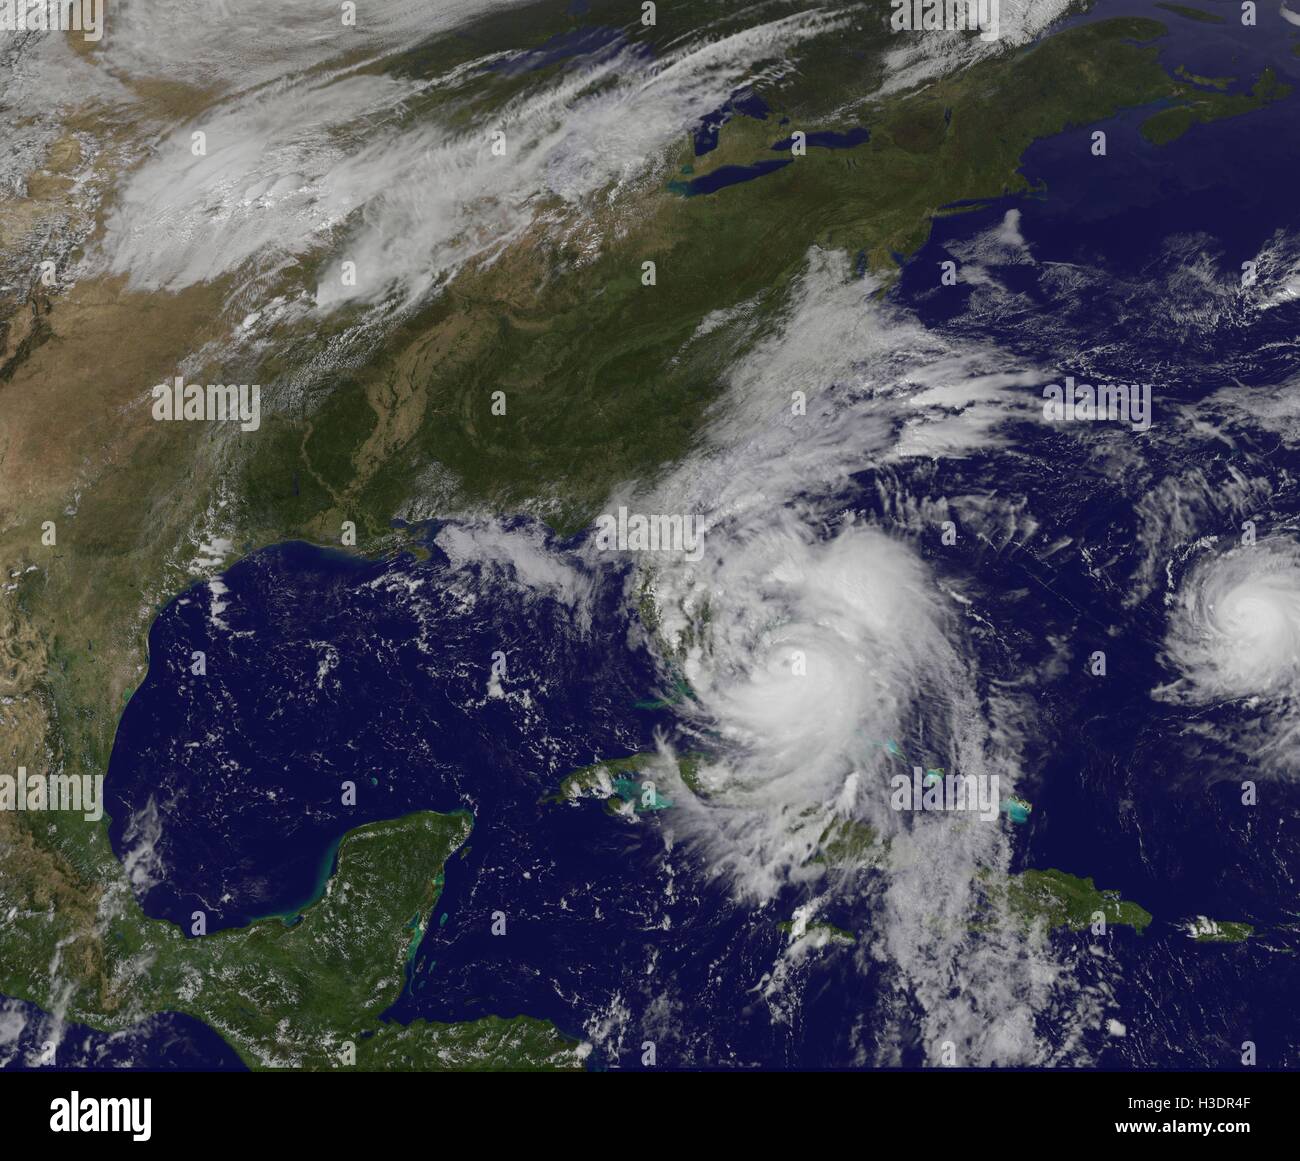 Silver Spring, Maryland, United States. 06 Oct, 2016. Image en vraies couleurs de l'Atlantique Nord Ouest, montrant l'Ouragan Matthew s'adressent à l'Etat de Floride, prises par le satellite météo NOAA GOES at 18:55 UTC (2:55pm EST), le 6 octobre 2016. NOAA Crédit Document/Gado/Alamy Live News. Banque D'Images